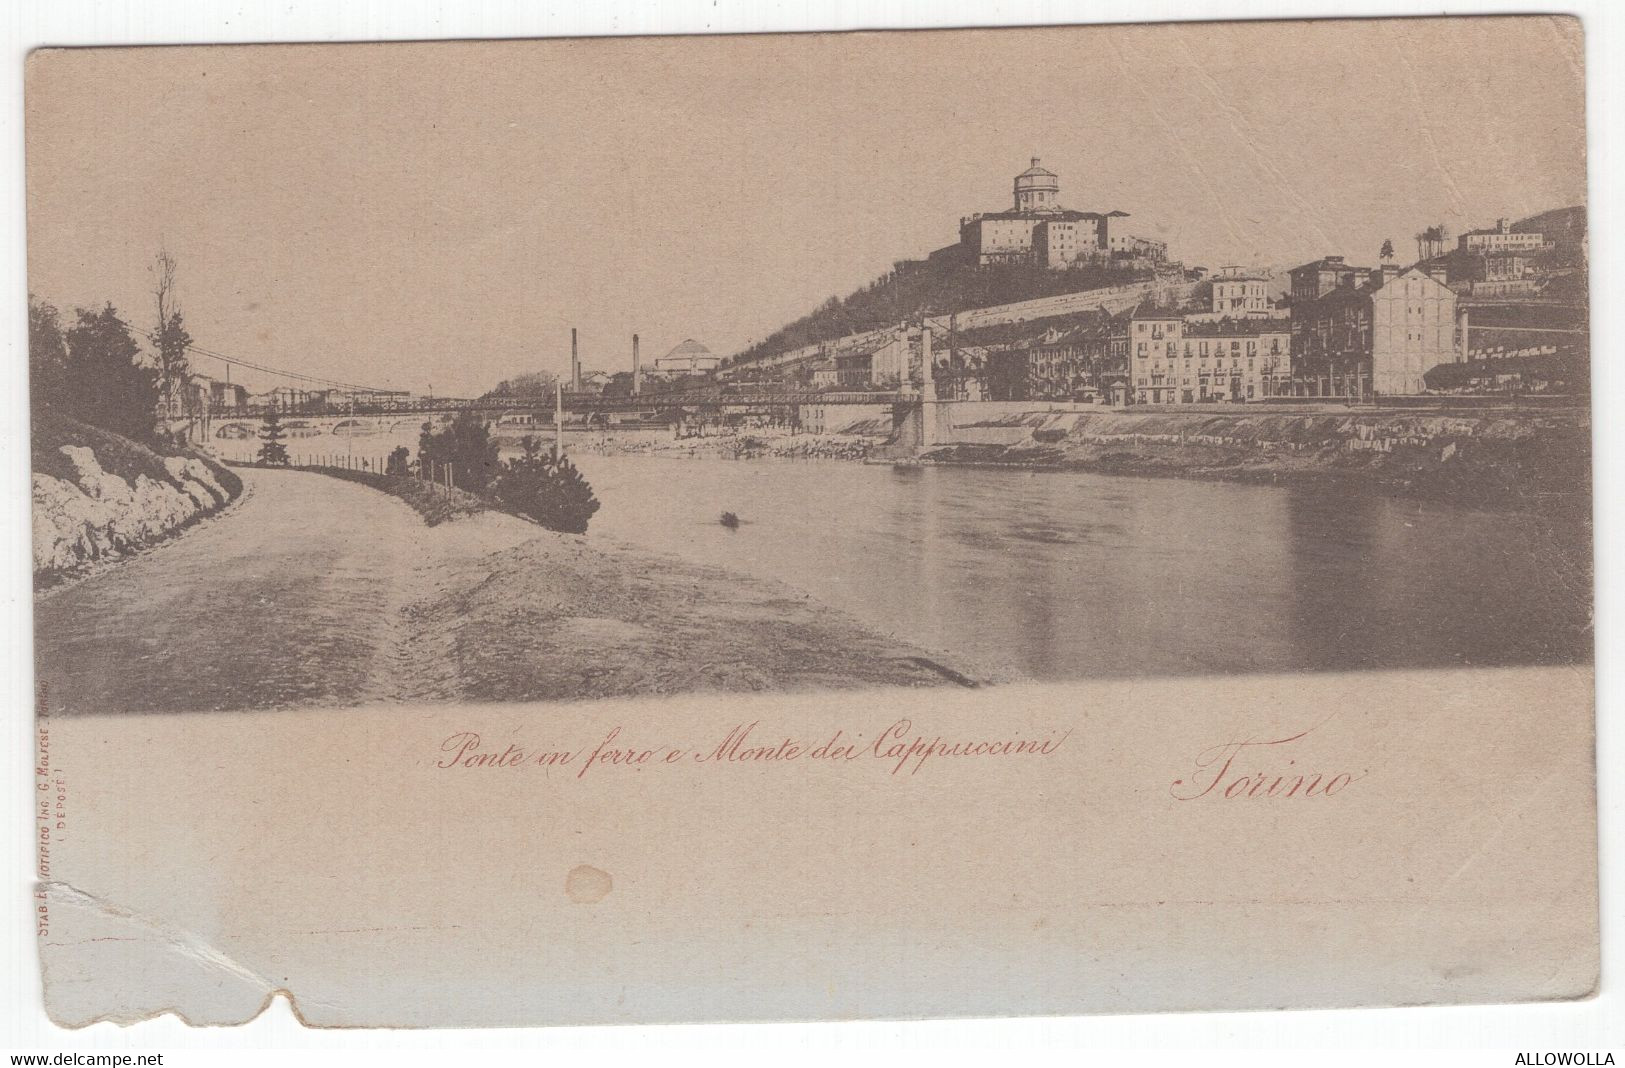 18780 " TORINO-PONTE IN FERRO E MONTE DEI CAPUCCINI " -VERA FOTO-CART POST. NON SPED - Ponts